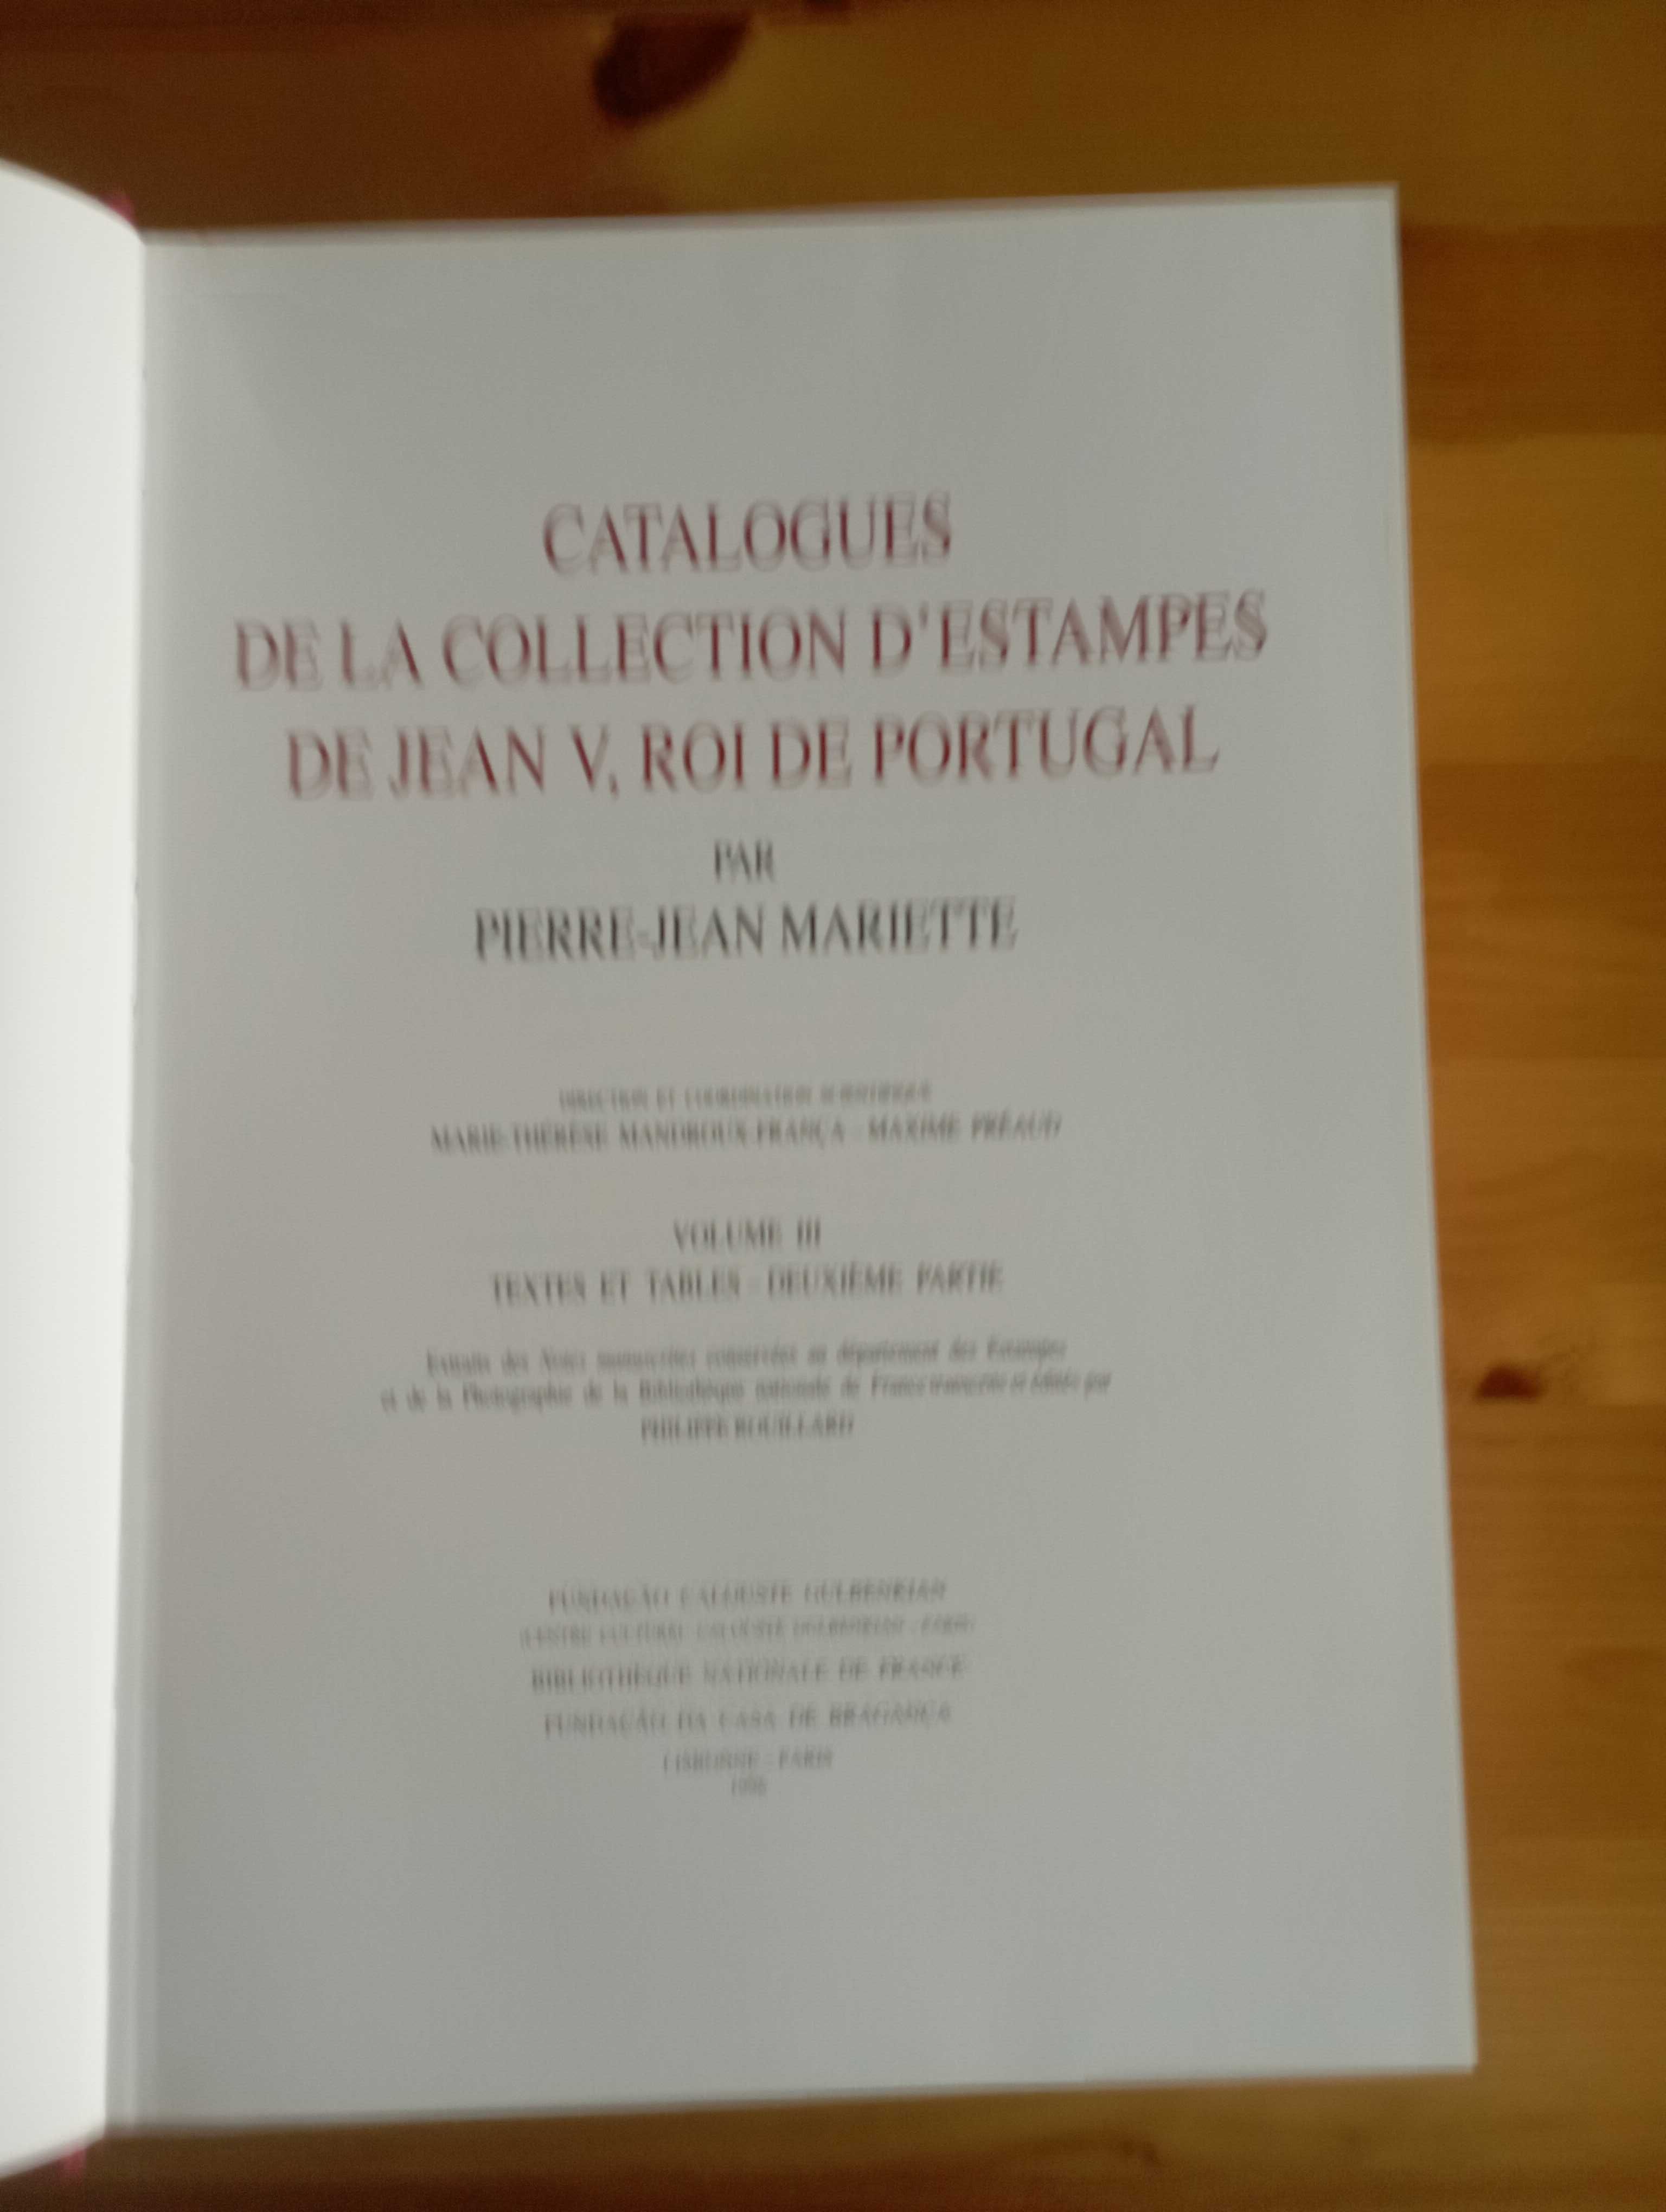 Catalogues de la Collection D'Estampes De Jean V, Roi de Portugal